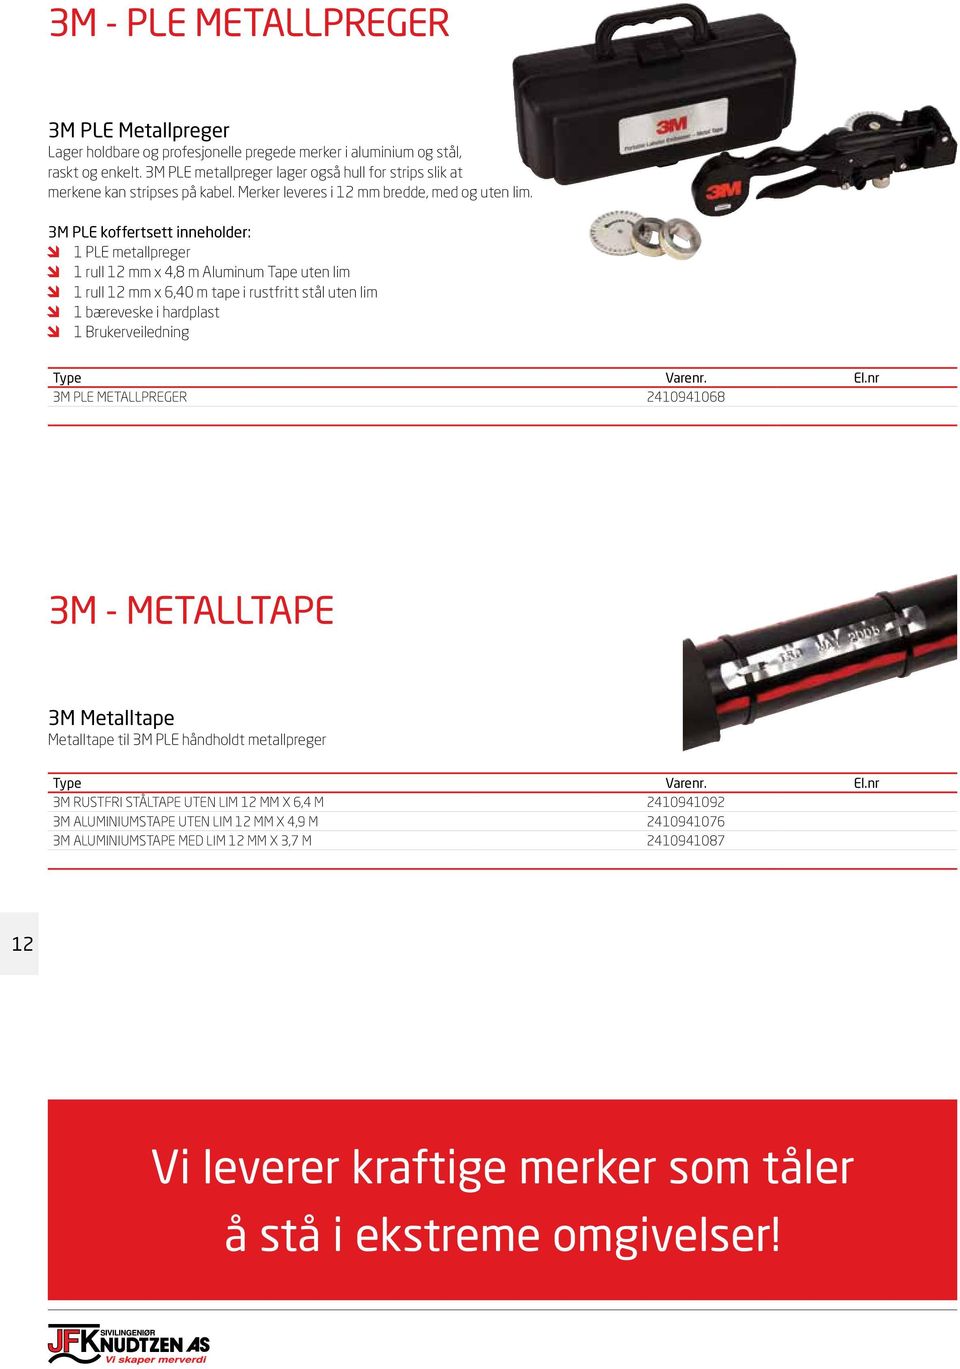 3M PLE koffertsett inneholder: 1 PLE metallpreger 1 rull 12 mm x 4,8 m Aluminum Tape uten lim 1 rull 12 mm x 6,40 m tape i rustfritt stål uten lim 1 bæreveske i hardplast 1 Brukerveiledning 3M